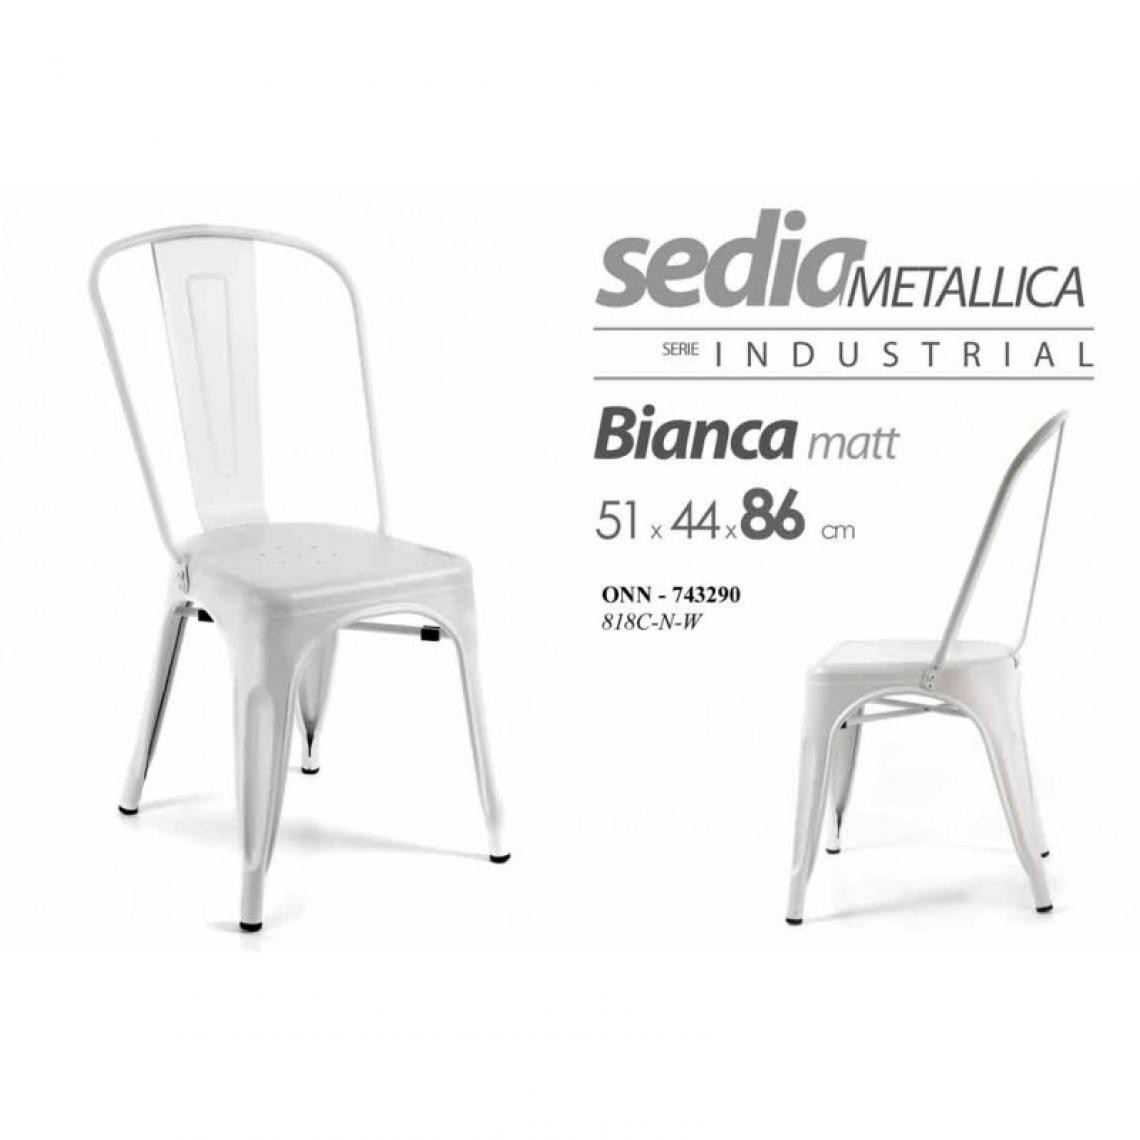 Webmarketpoint - Chaise industrielle blanche en métal style urbain cm 51 x 44 x 86 h - Chaises